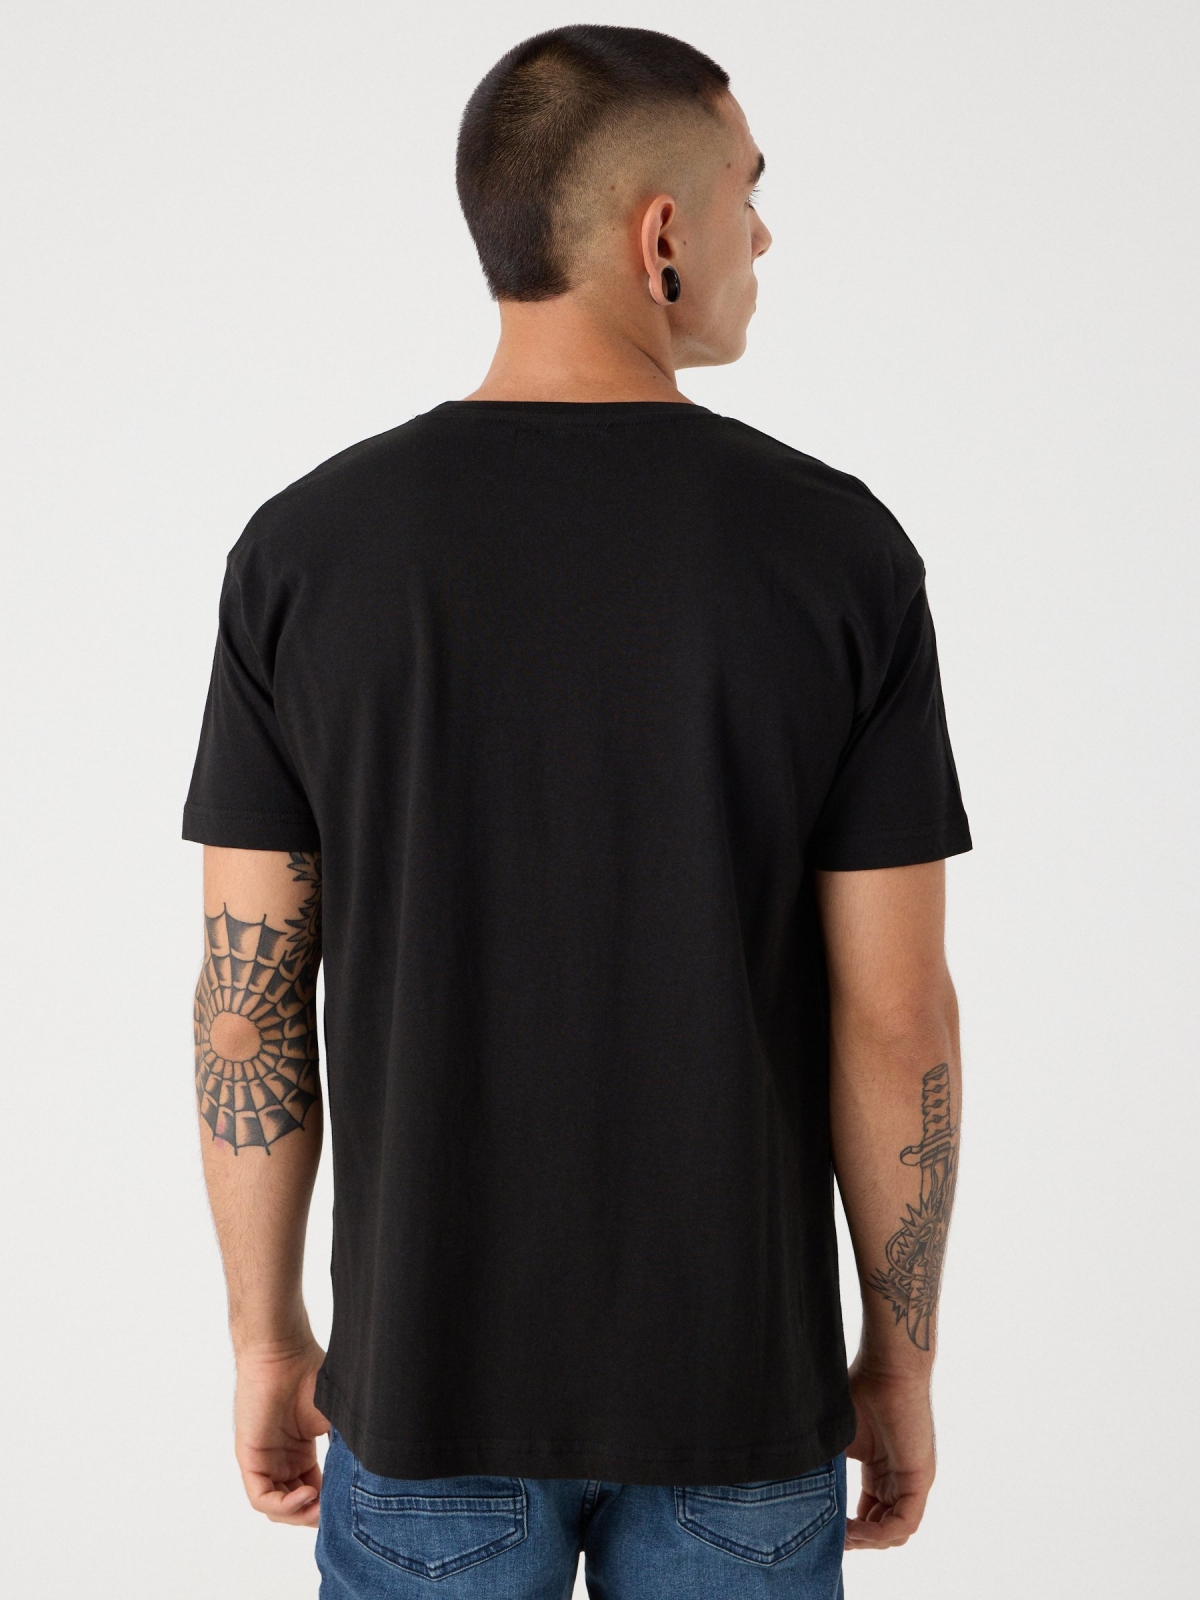 T-shirt caveira pintada preto vista meia traseira